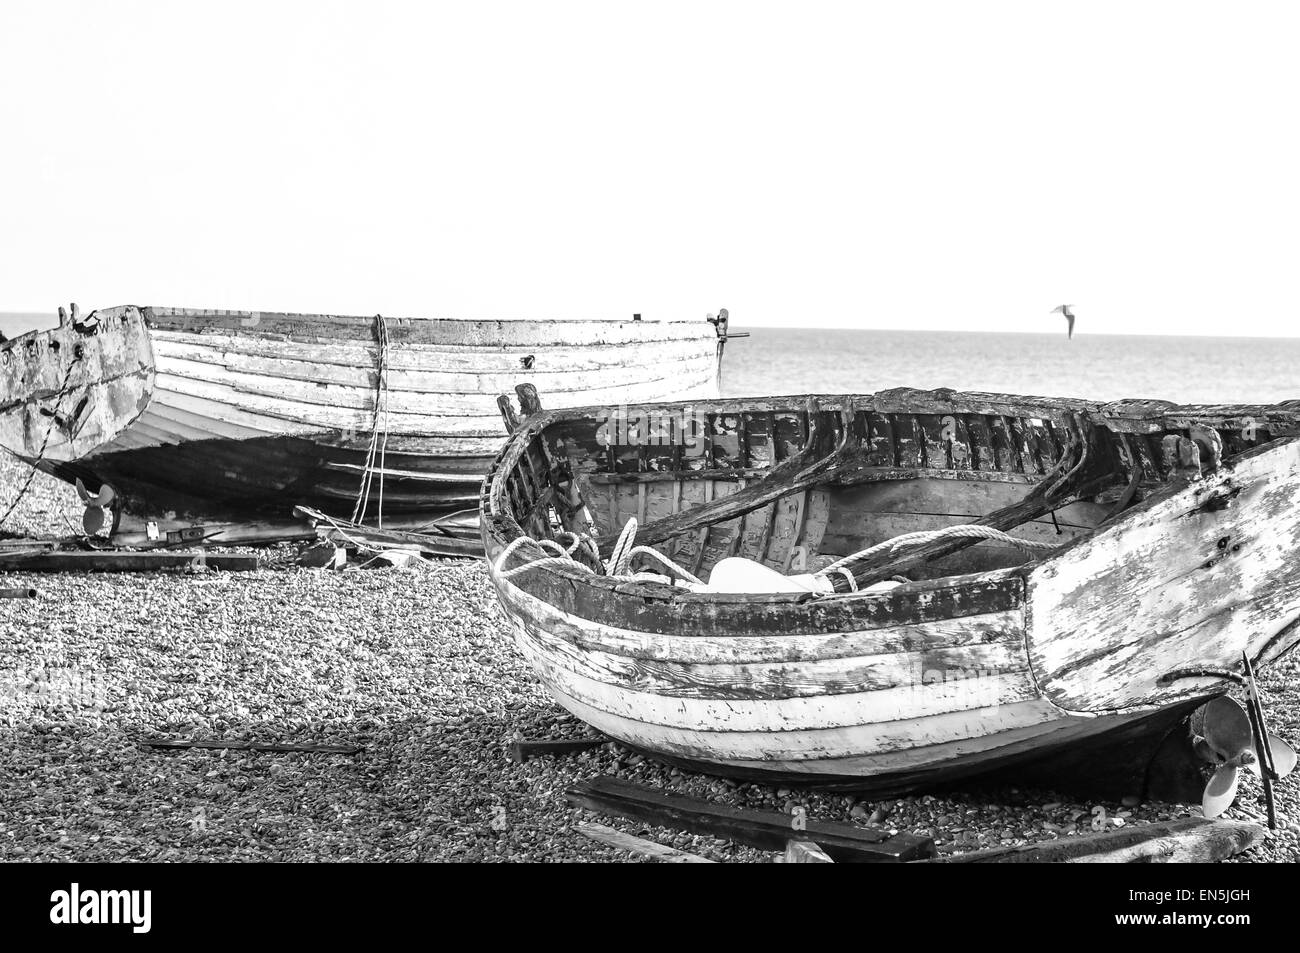 Ton pâle bateaux de pêche sur une plage de galets (gravier) à la mer. B&W Banque D'Images